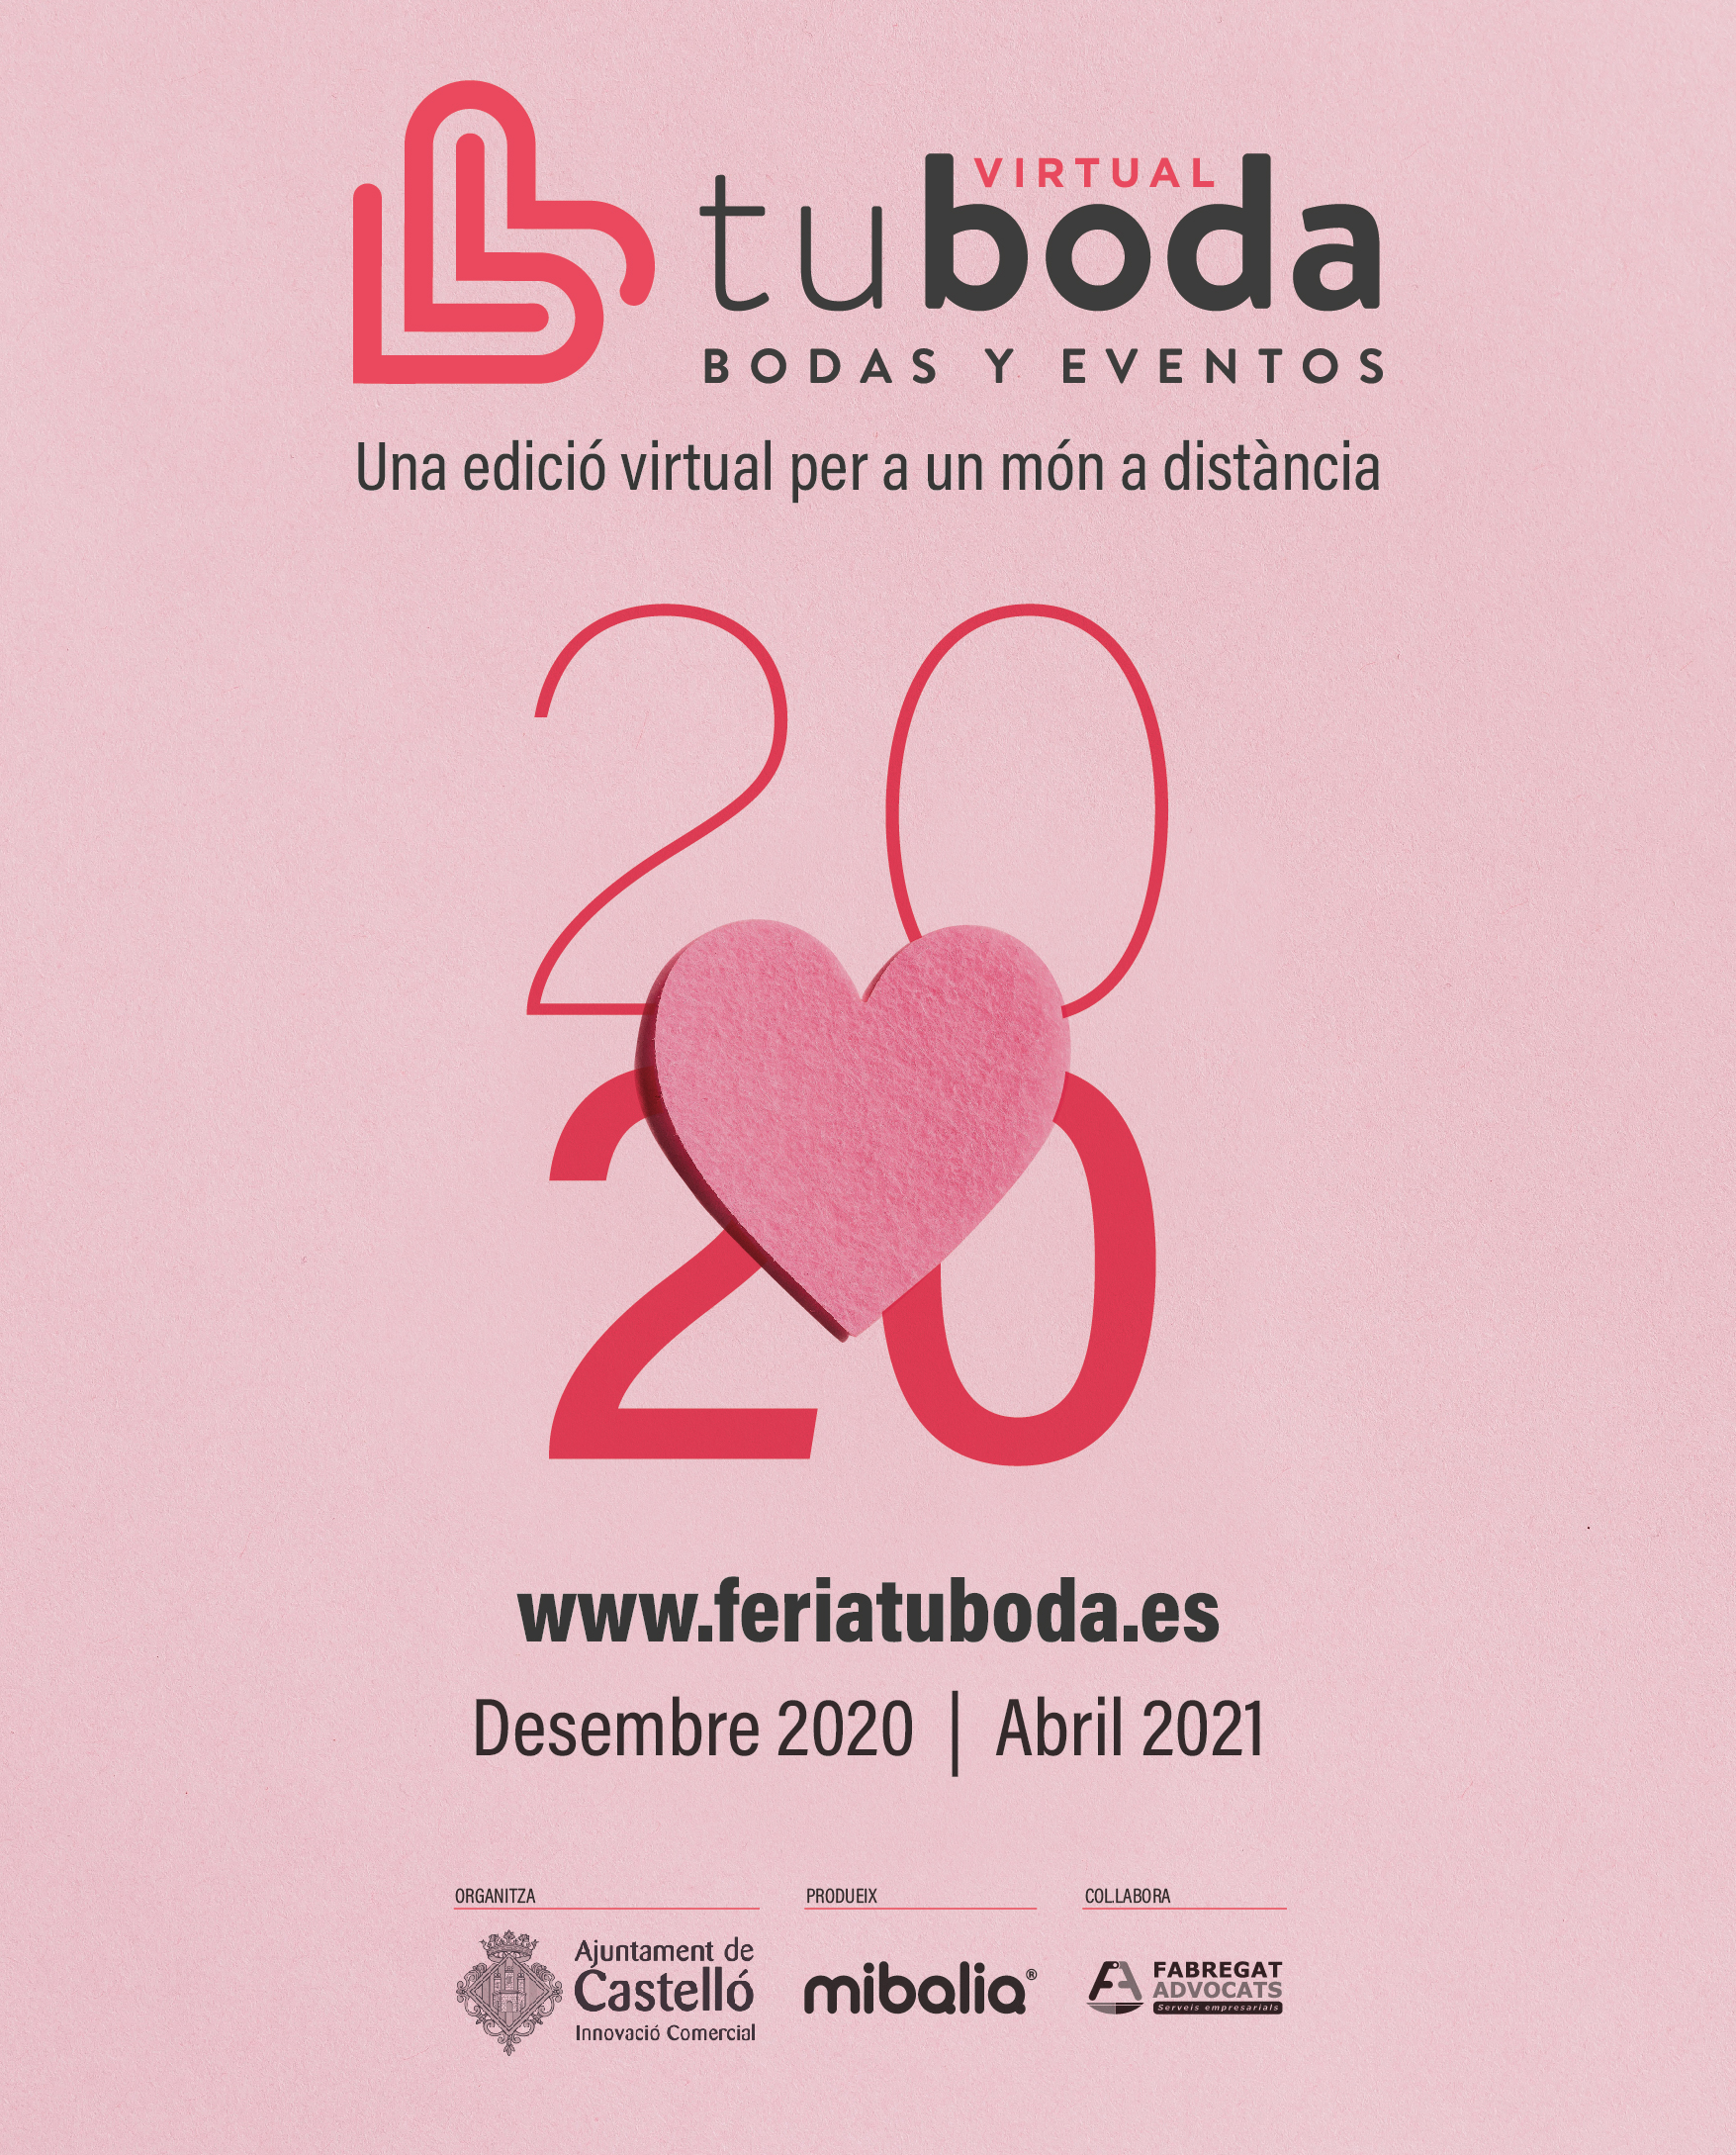 Castelló organiza la Feria Tu Boda a través de un portal web que reunirá a unos 70 expositores